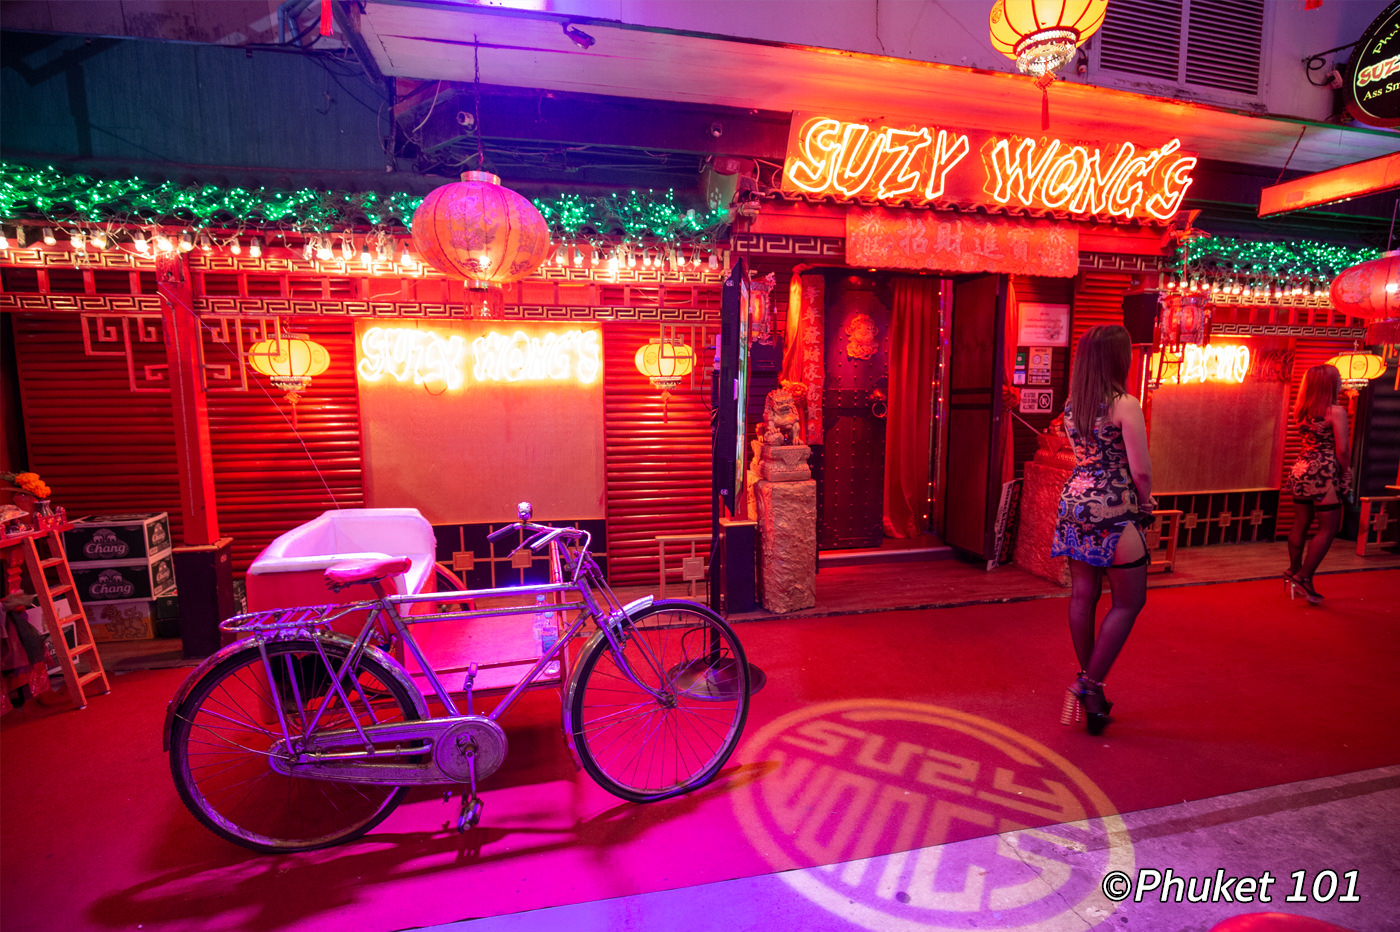 Suzy Wong's Phuket